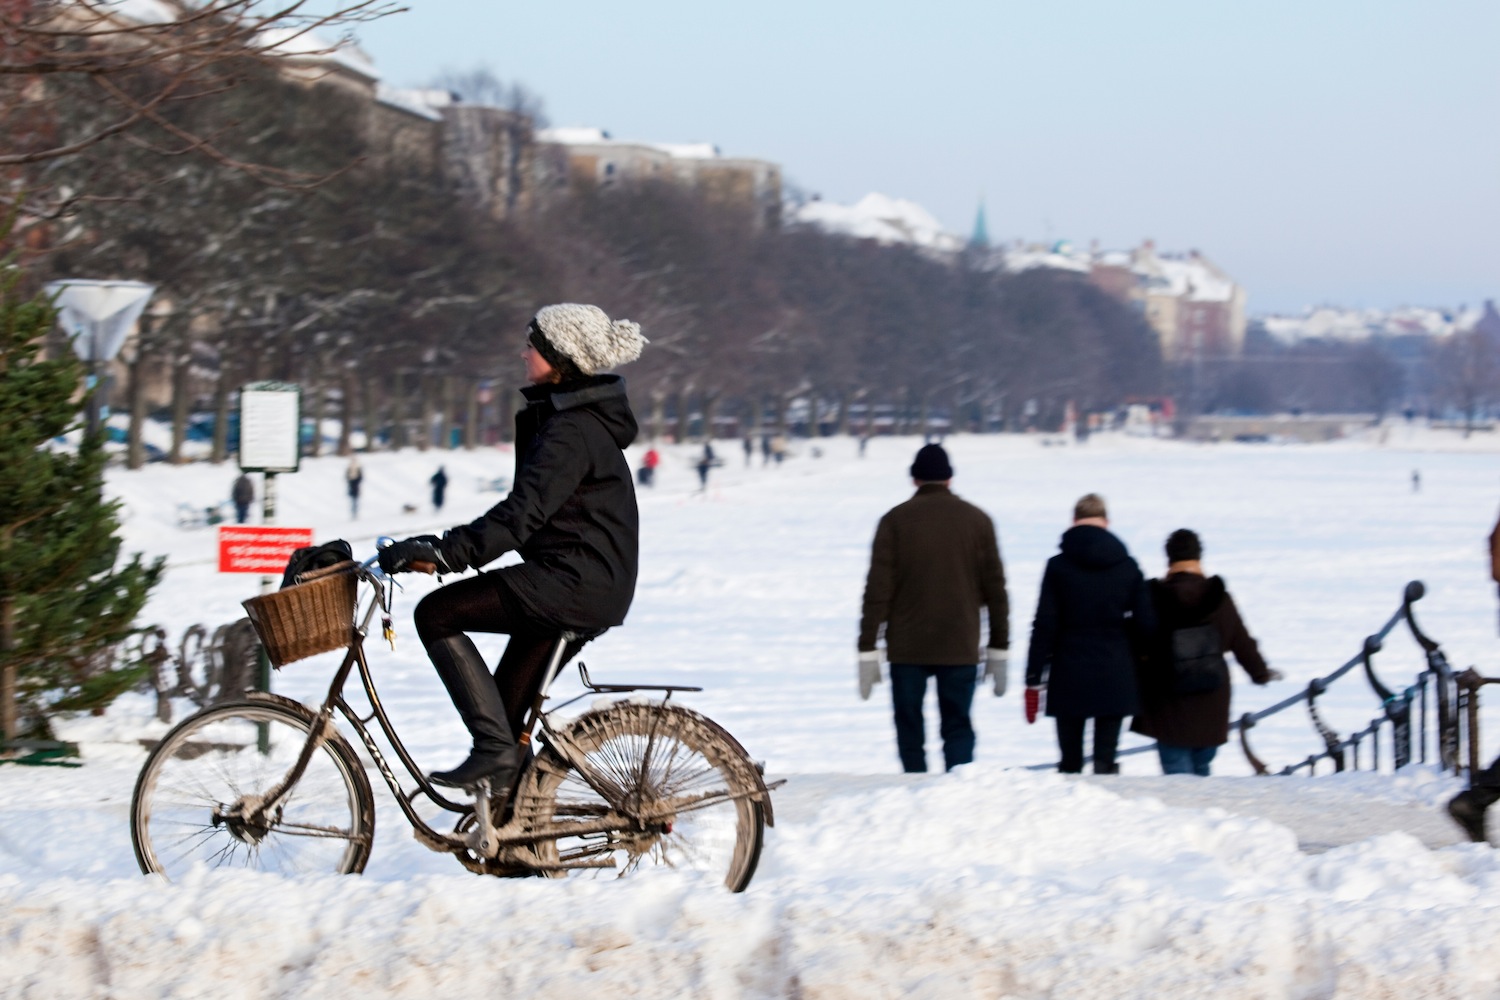 Circulando en bici en invierno, foto Kim Wyon.